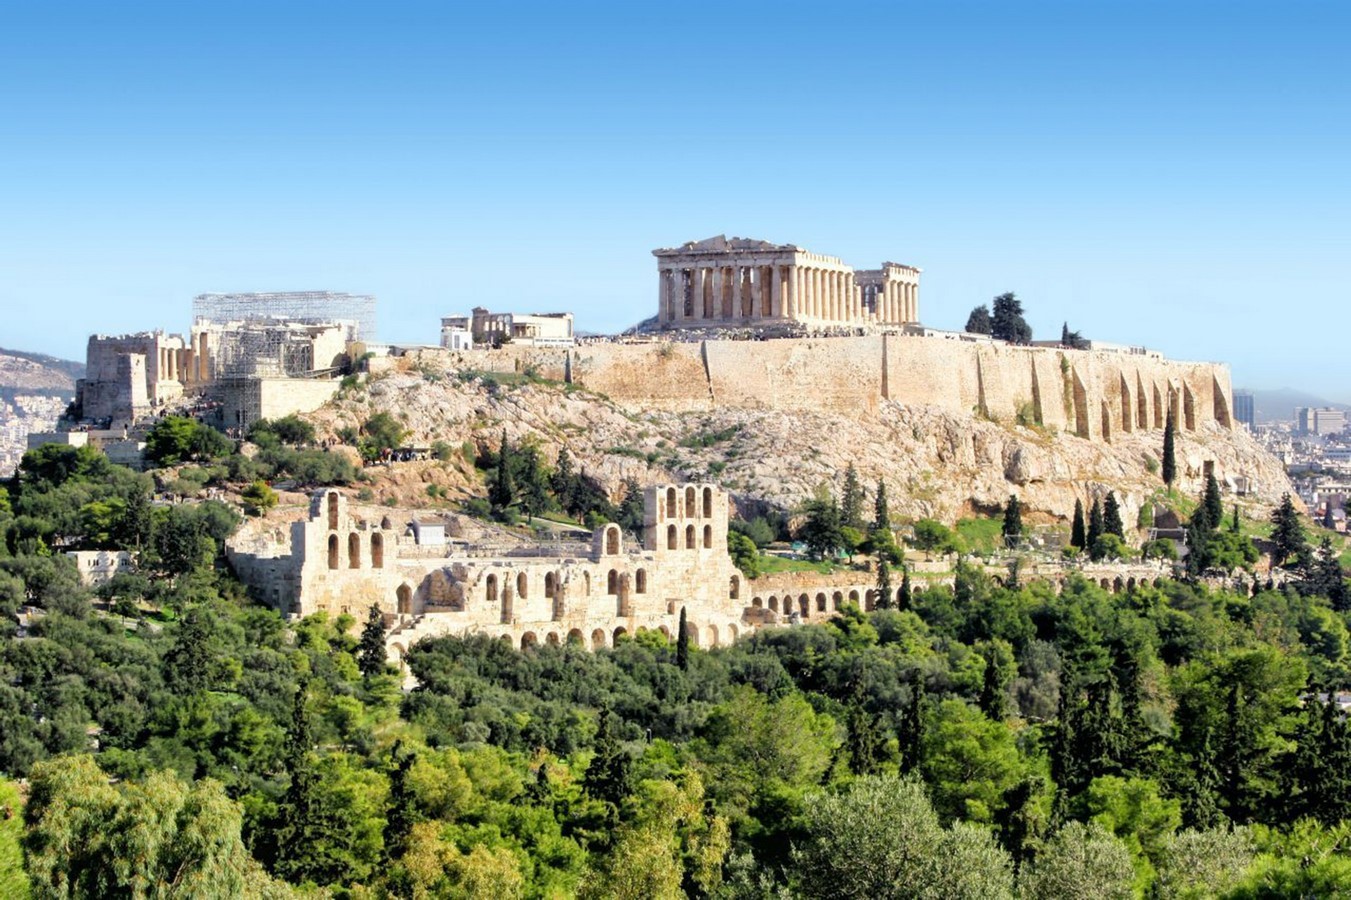 Acropolis of Athens - Sheet1